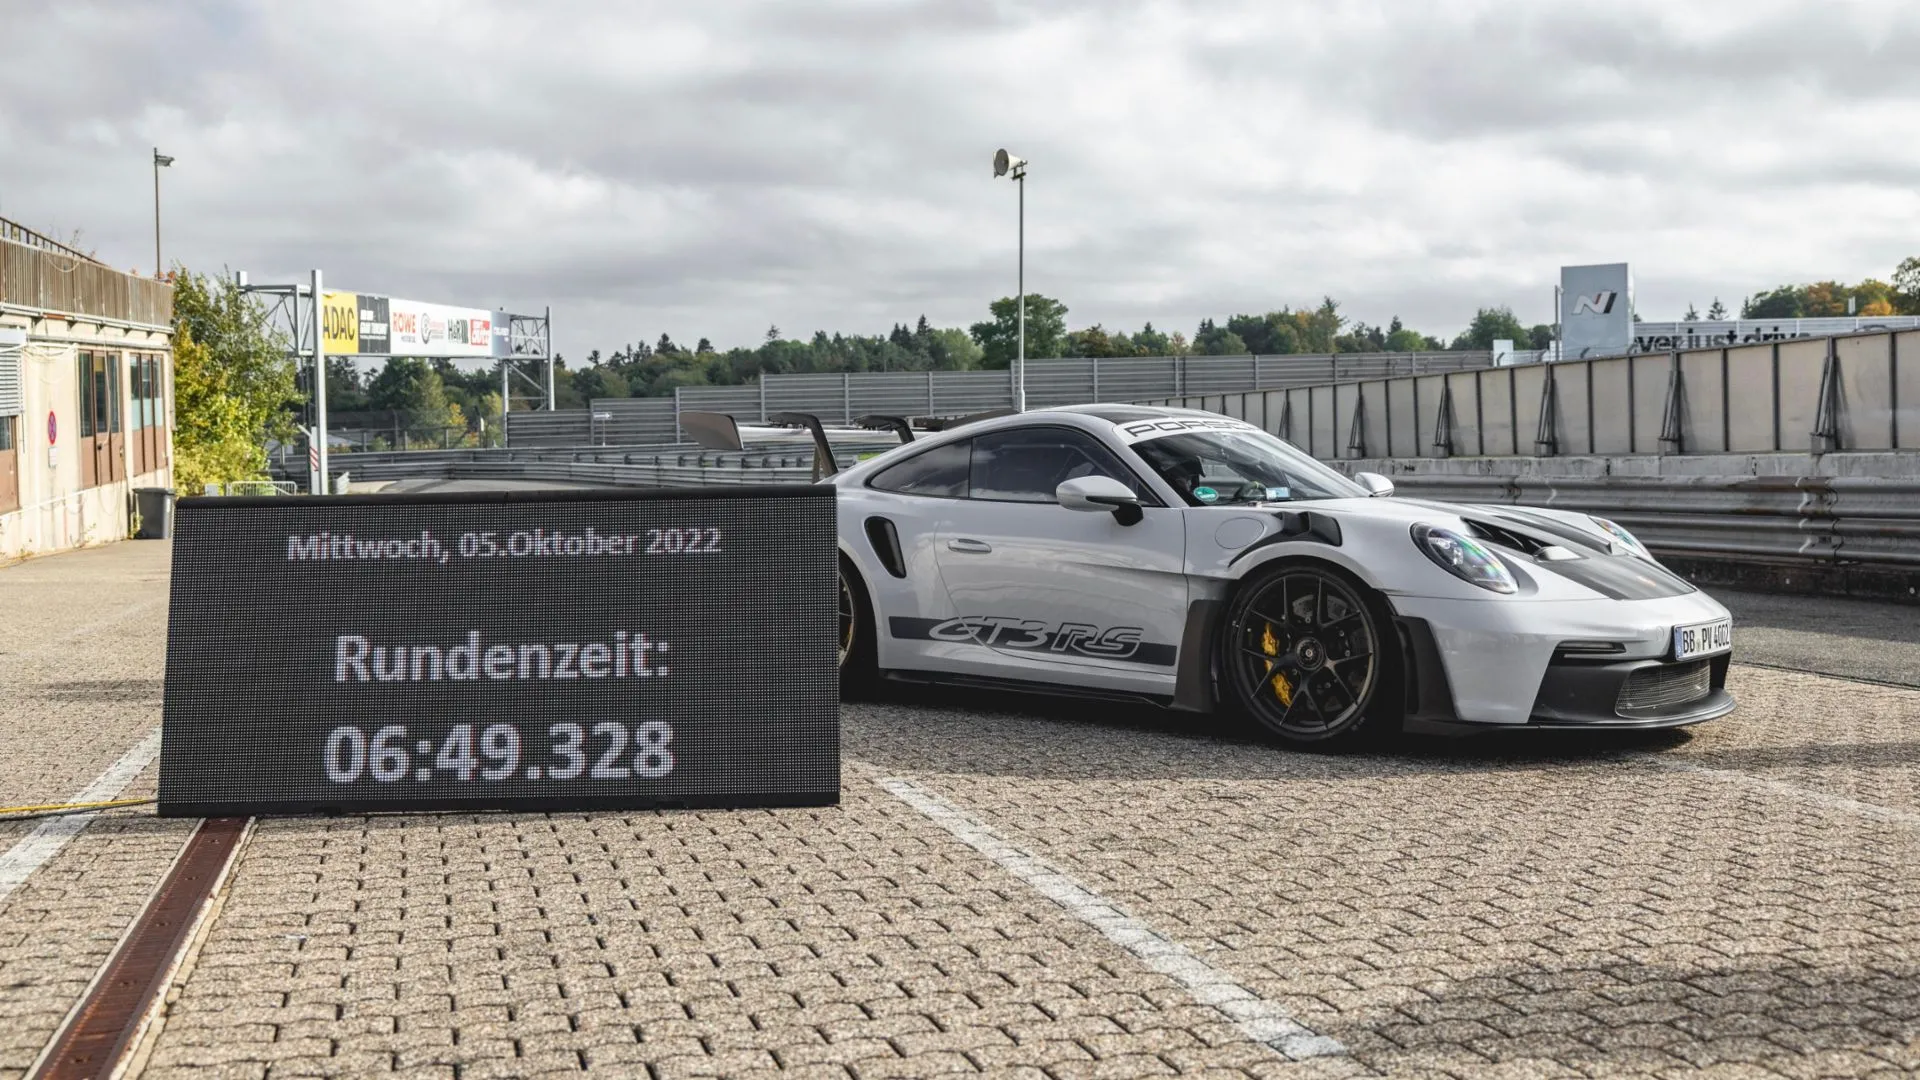 El nuevo Porsche 911 GT3 RS ha hecho una increíble vuelta en Nürburgring